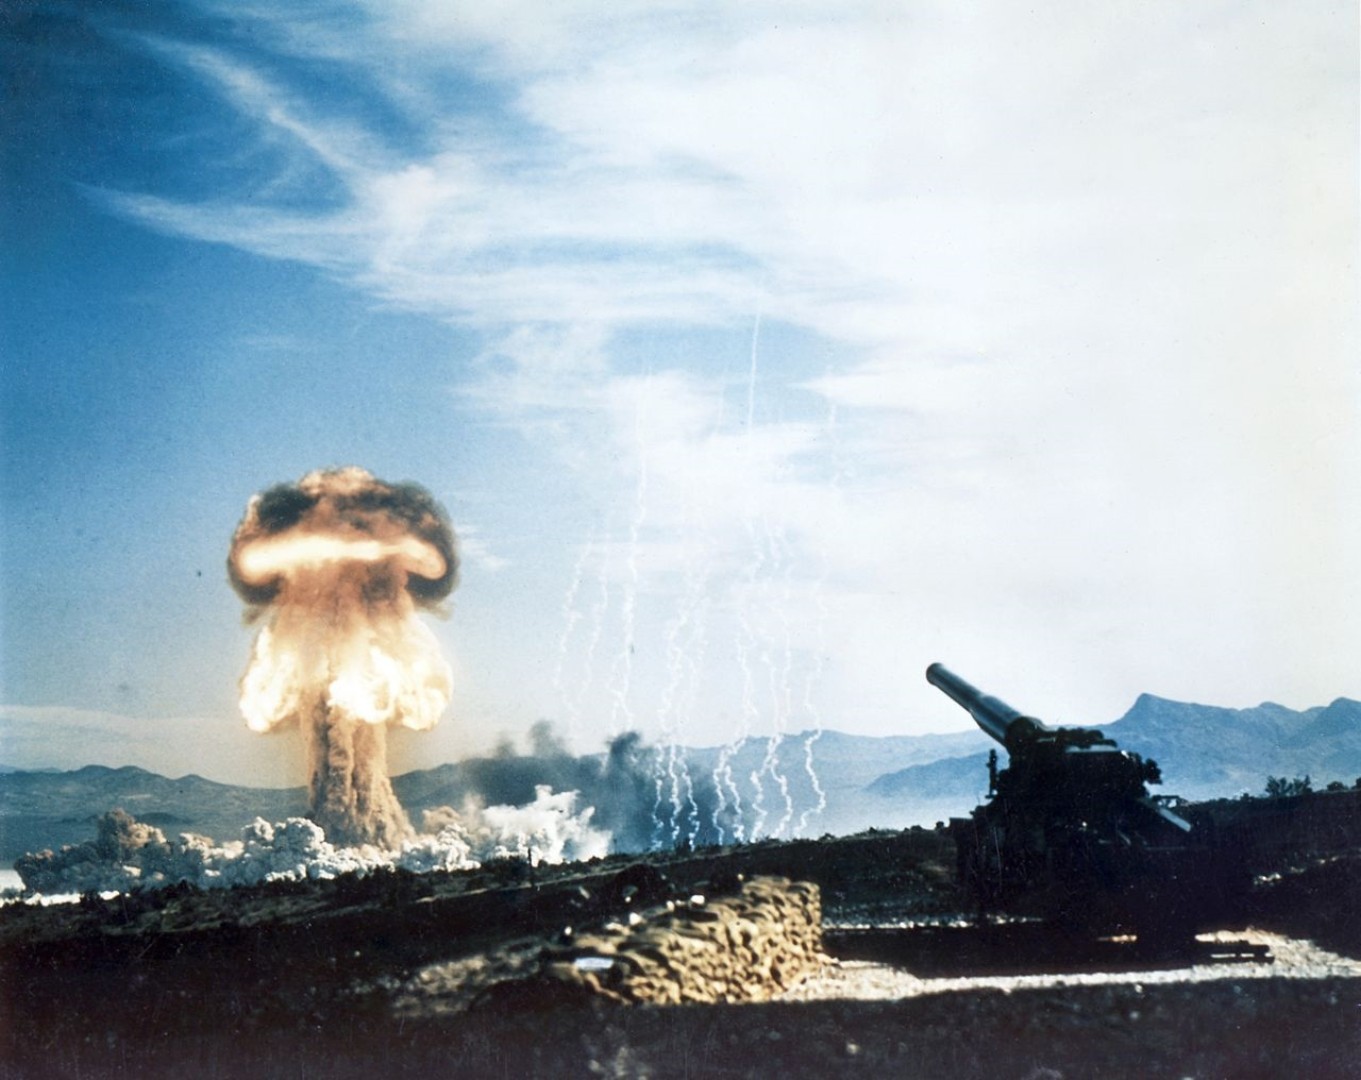 To nie wymysł z gry wideo – wielkie działo do strzelania atomówkami istniało naprawdę